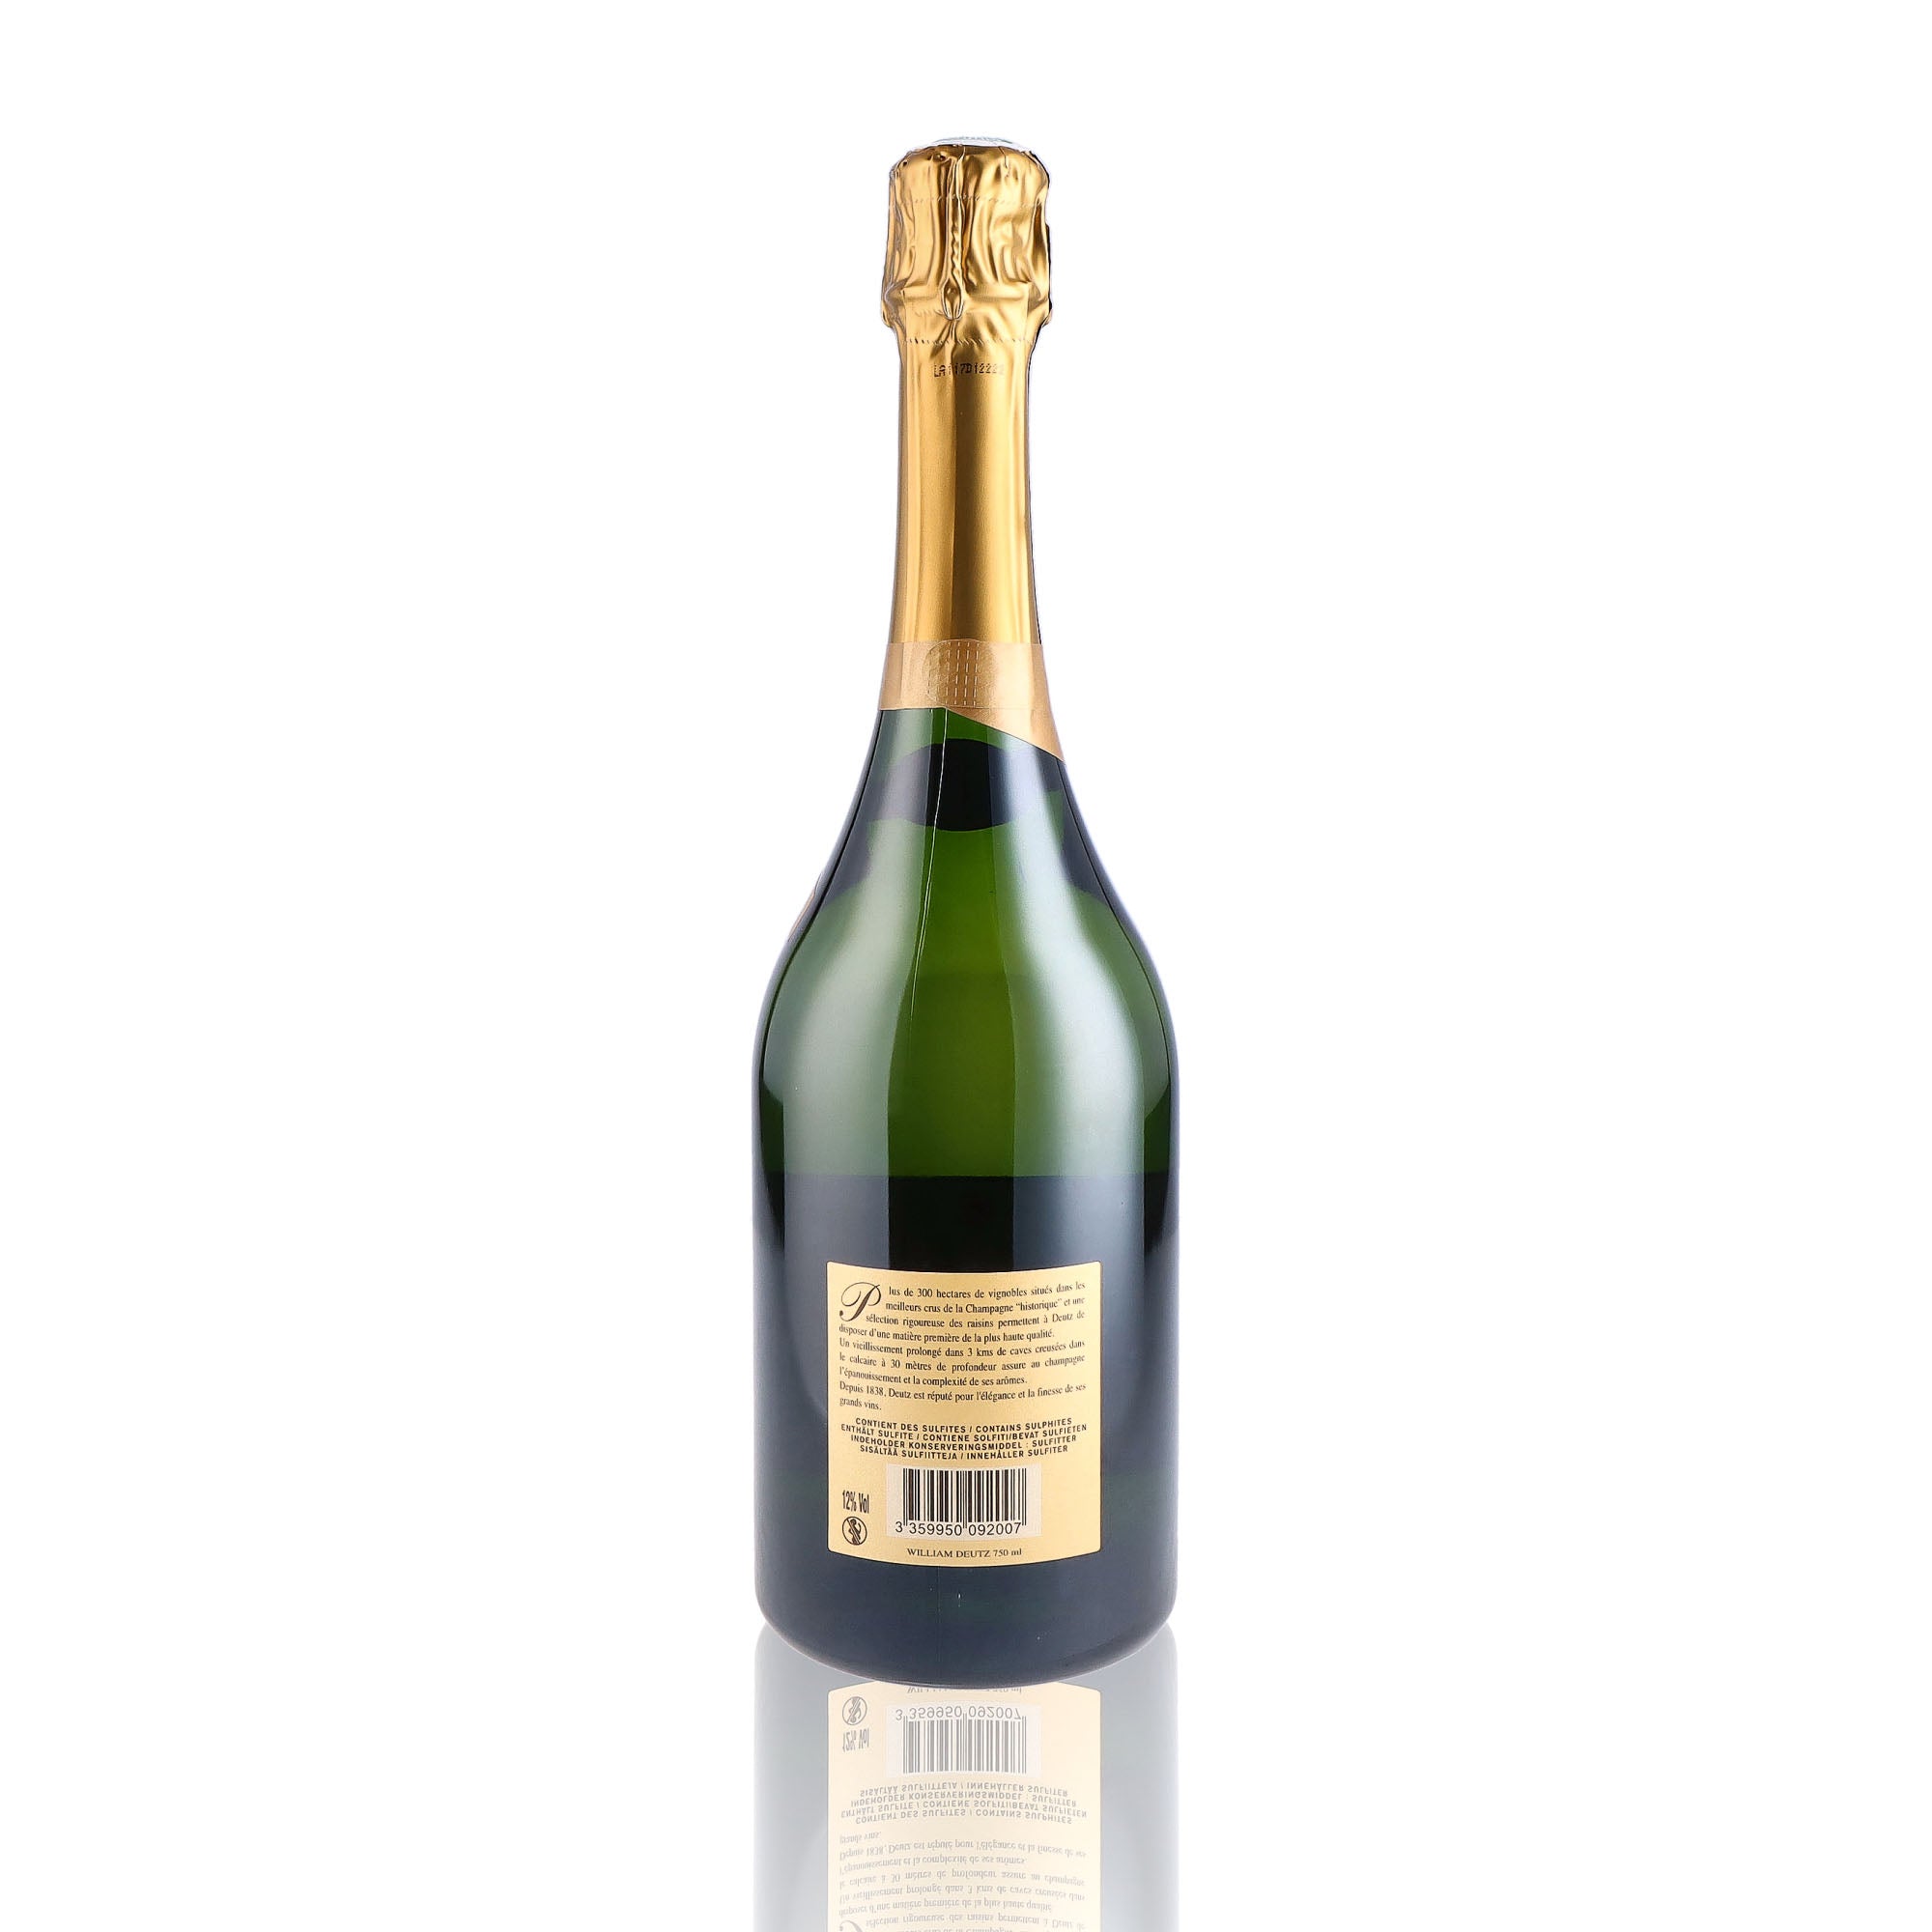 Une bouteille de champagne de la marque Deutz, de type brut, nommée cuvée william deutz, millésime 2013.